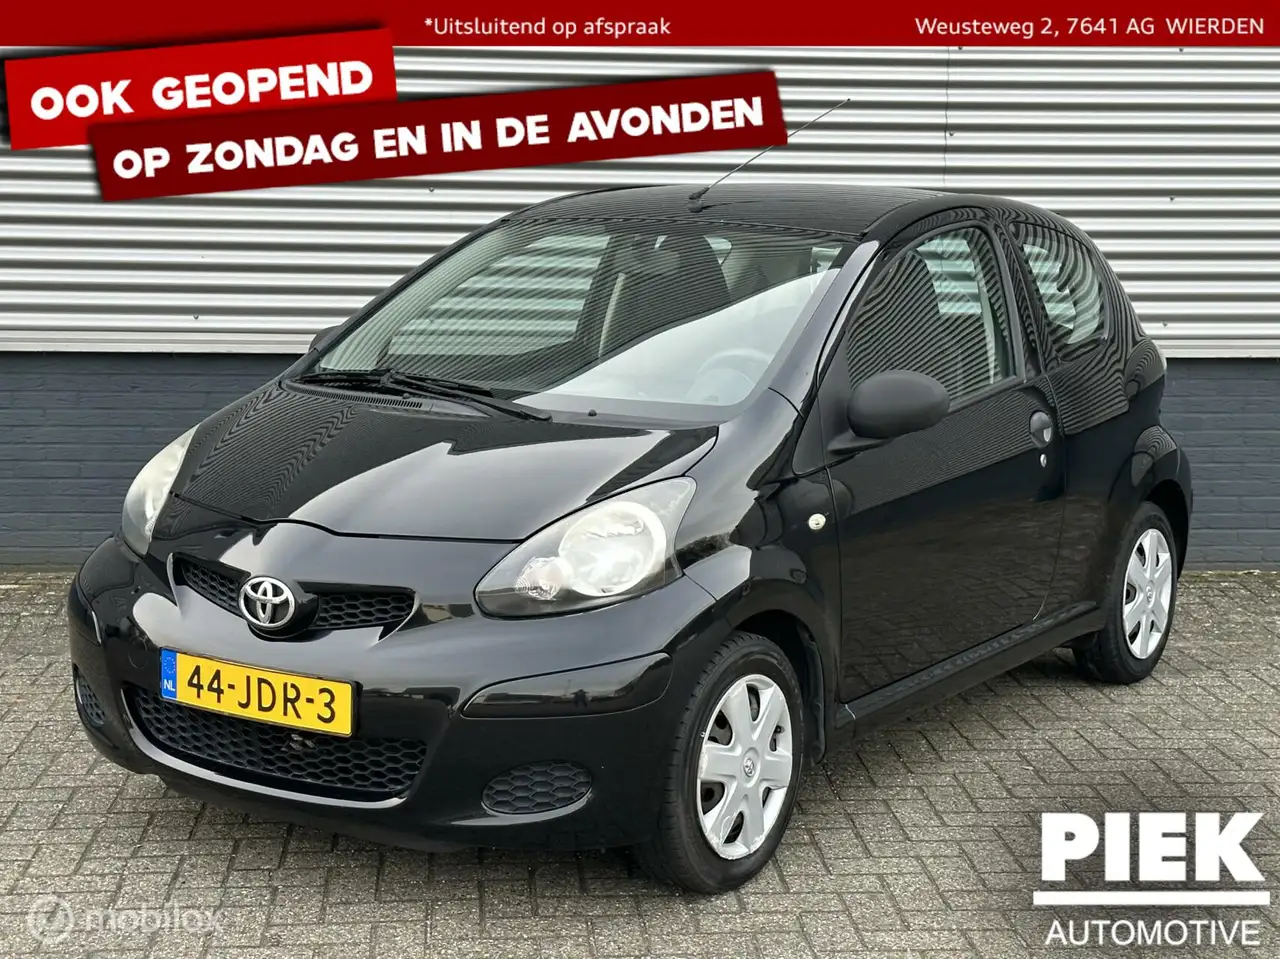 Toyota Aygo Stadswagen in Zwart tweedehands in WIERDEN voor € 3.499,-